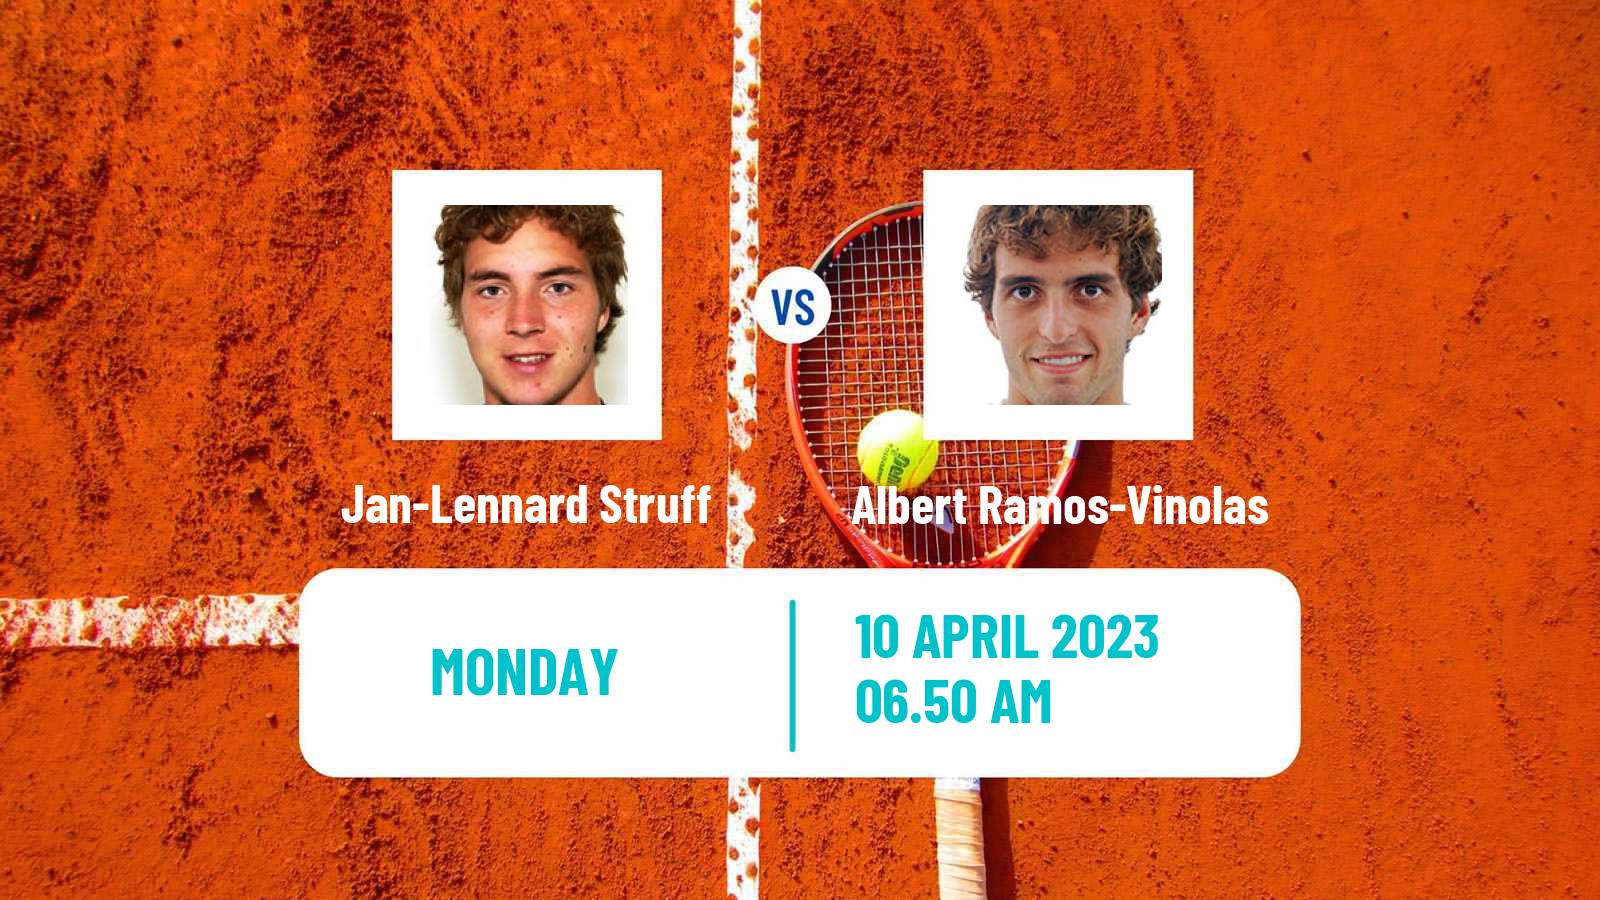 Tennis ATP Monte Carlo Jan-Lennard Struff - Albert Ramos-Vinolas